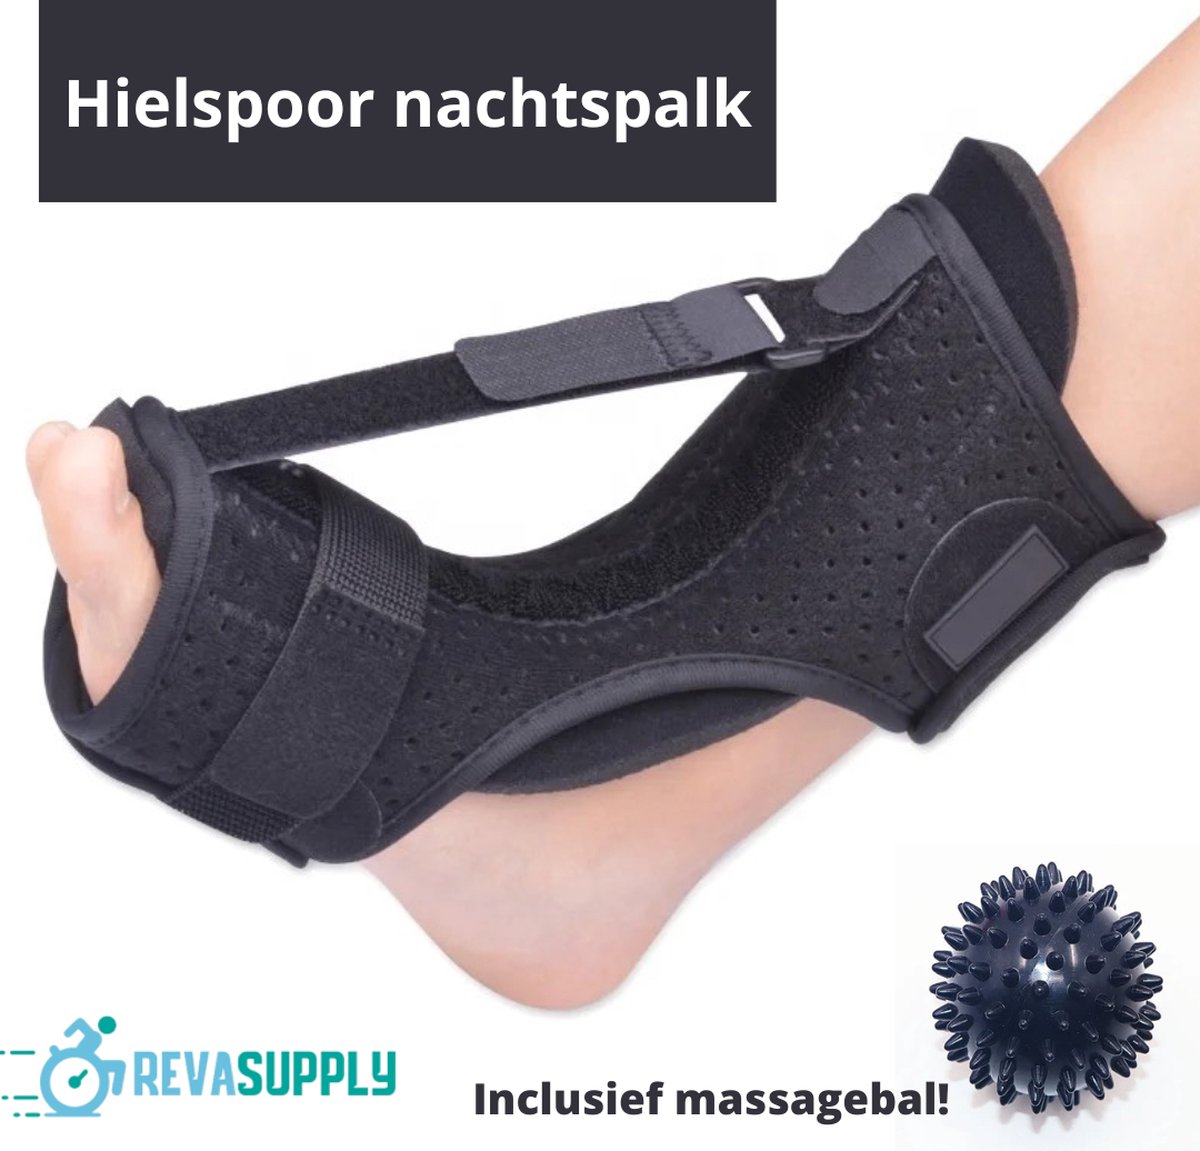 Revasupply™ - Hielspoor nachtspalk - Inclusief massagebal - Nachtspalk - Strassburg sok - Achillespees - Fasciitis plantaris - Ontsteking - Spalk - Zwart